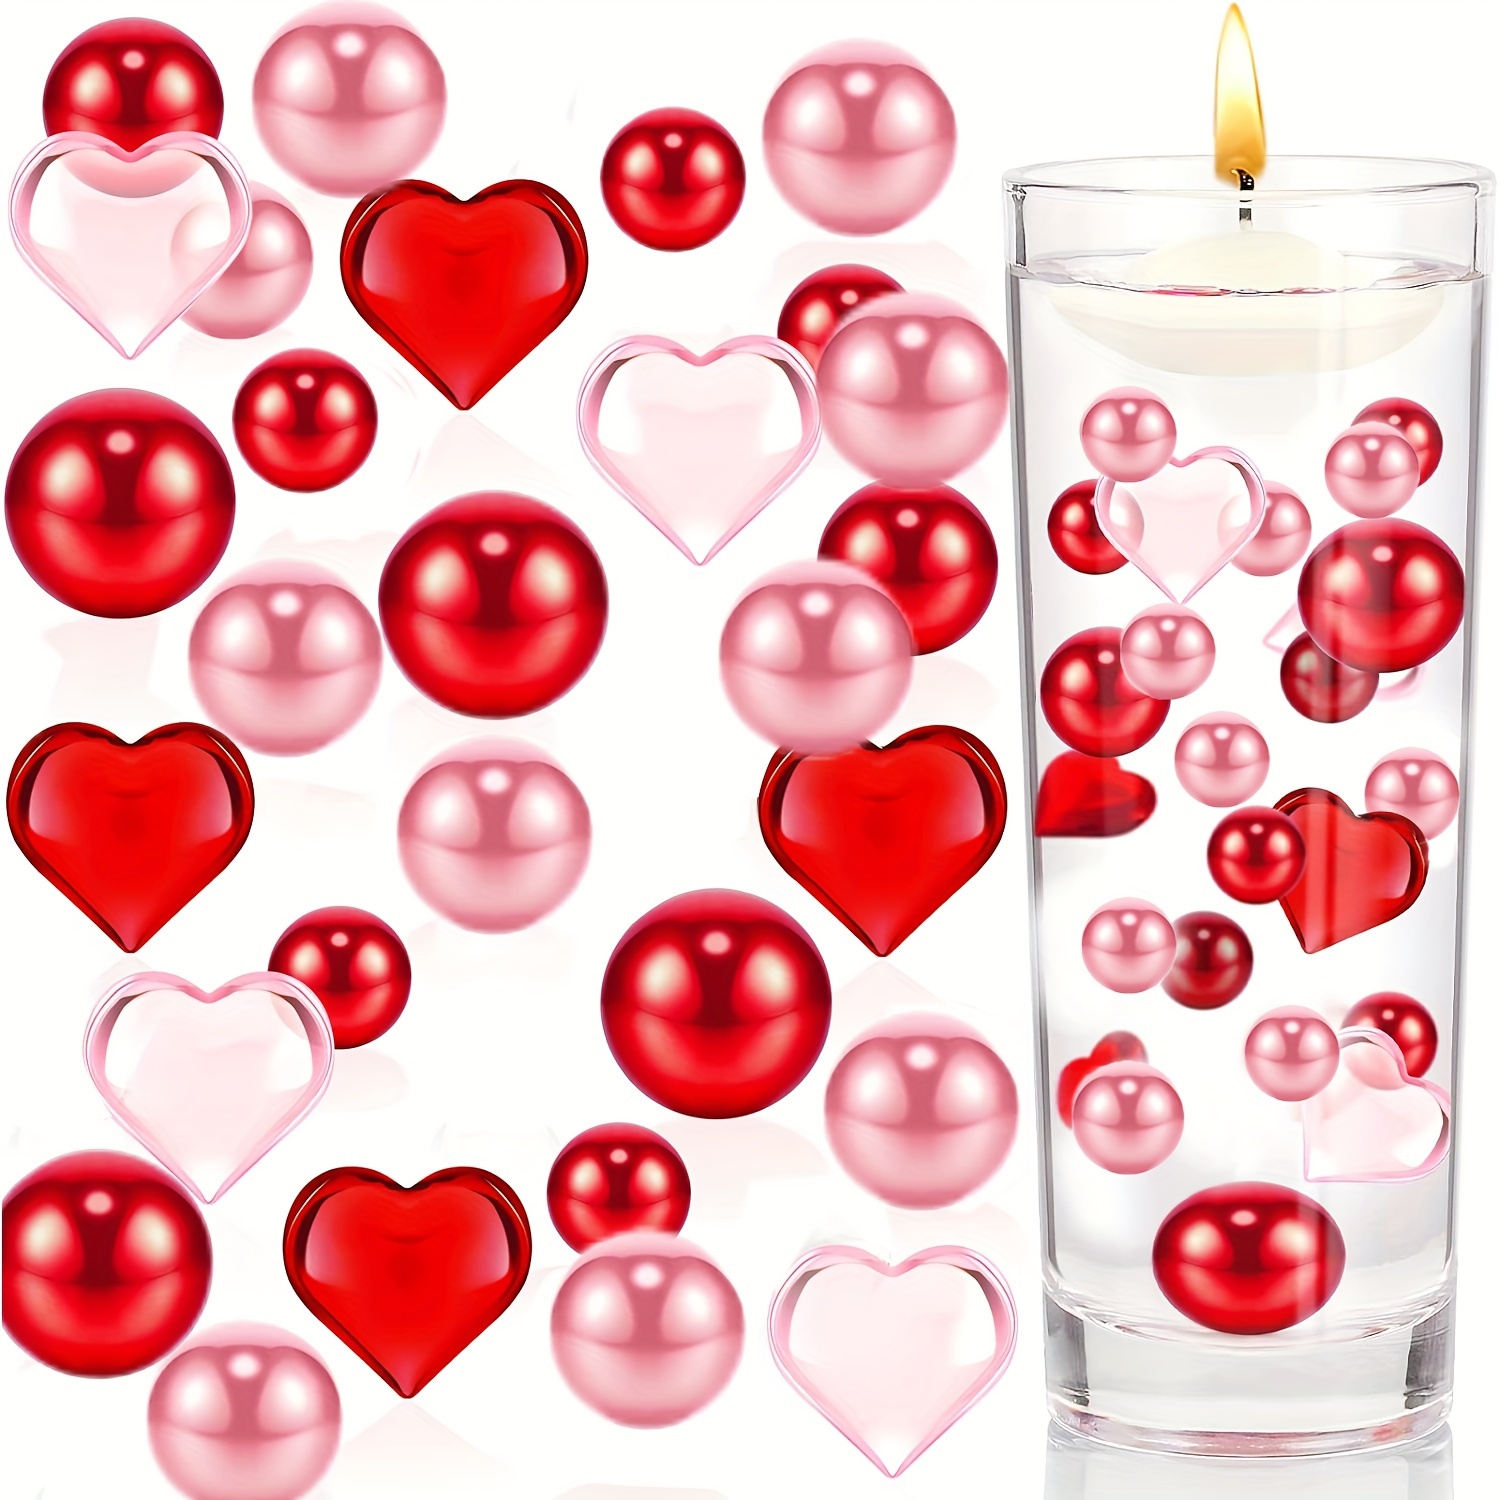 Dengmore Valentines Day Vase Filler Decorations Floating Valentine's Candles Plastic Glass Heart Vase Filler Floating Pearls Beads for Vases Valentine